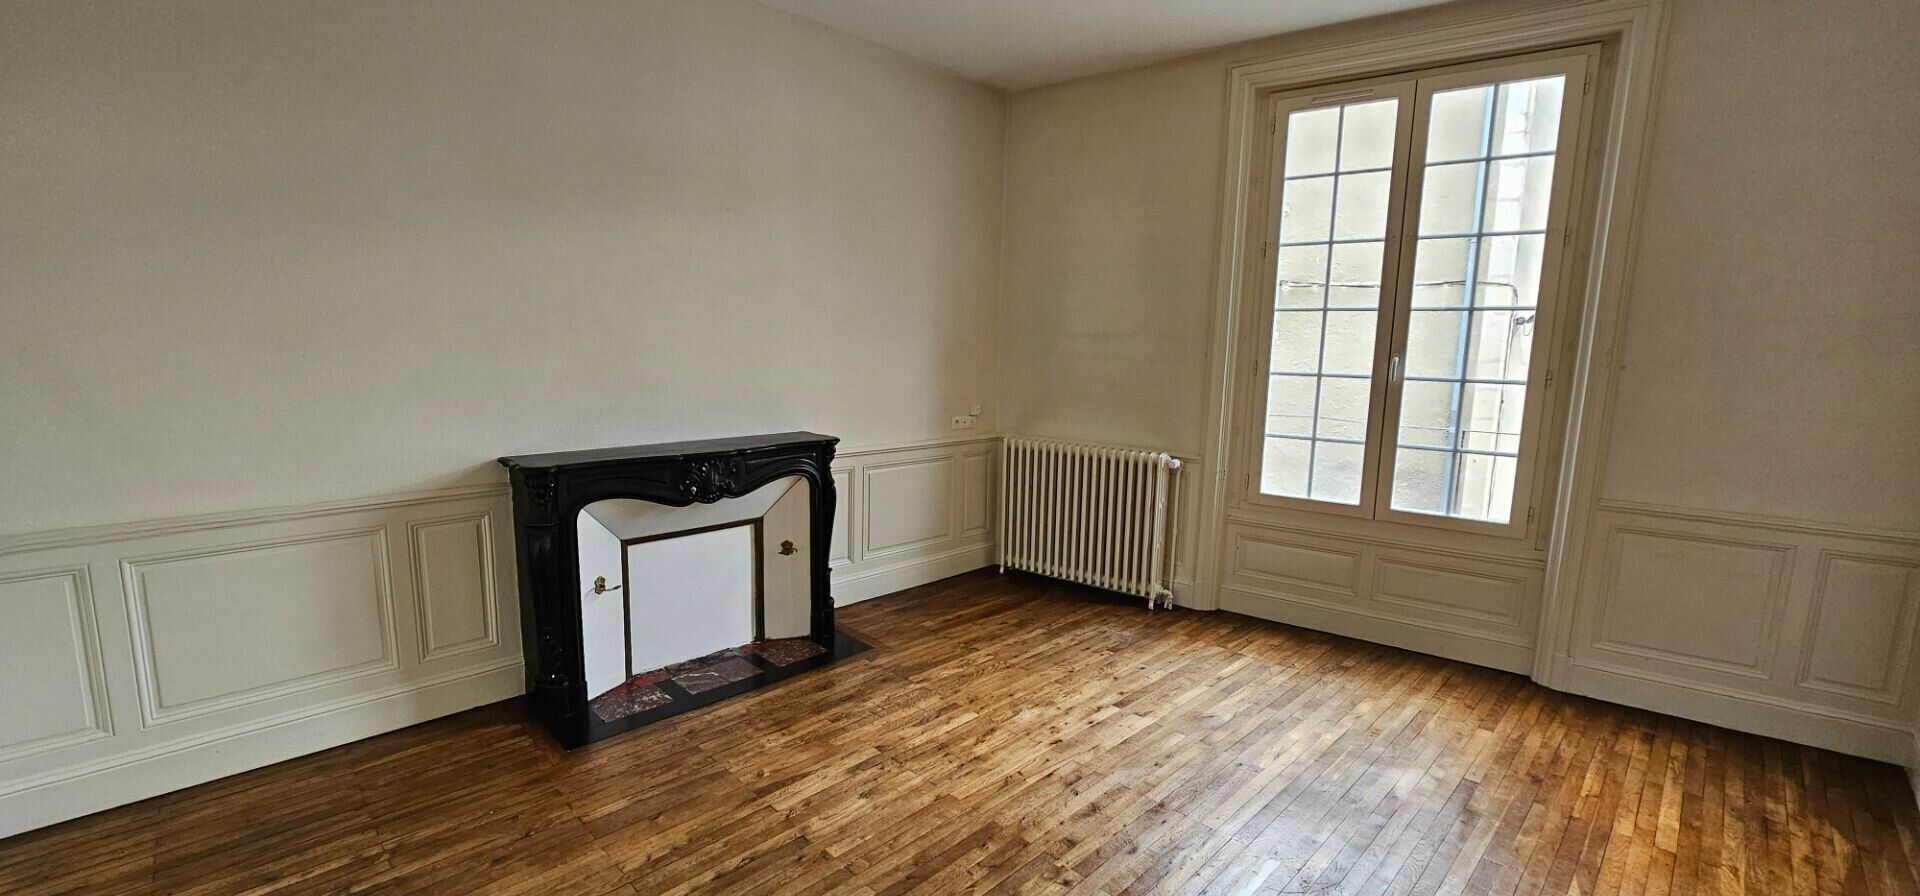 Appartement à vendre 2 84.86m2 à Poitiers vignette-3